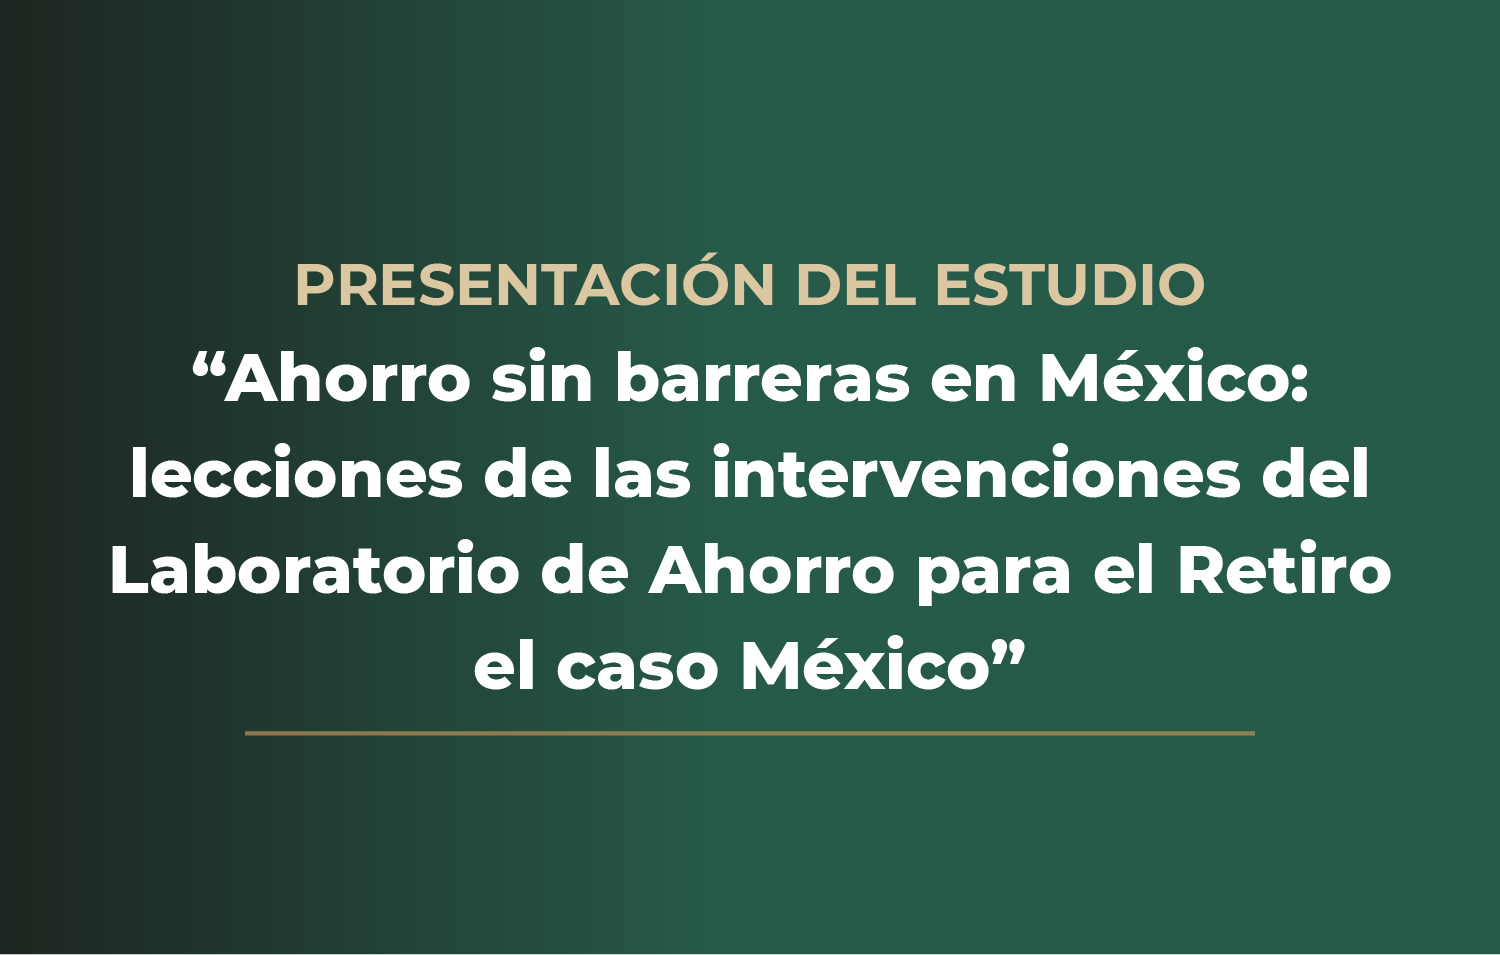 Presentación del estudio “Ahorro sin barreras: lecciones de las intervenciones del Laboratorio de Ahorro para el Retiro” el caso México.